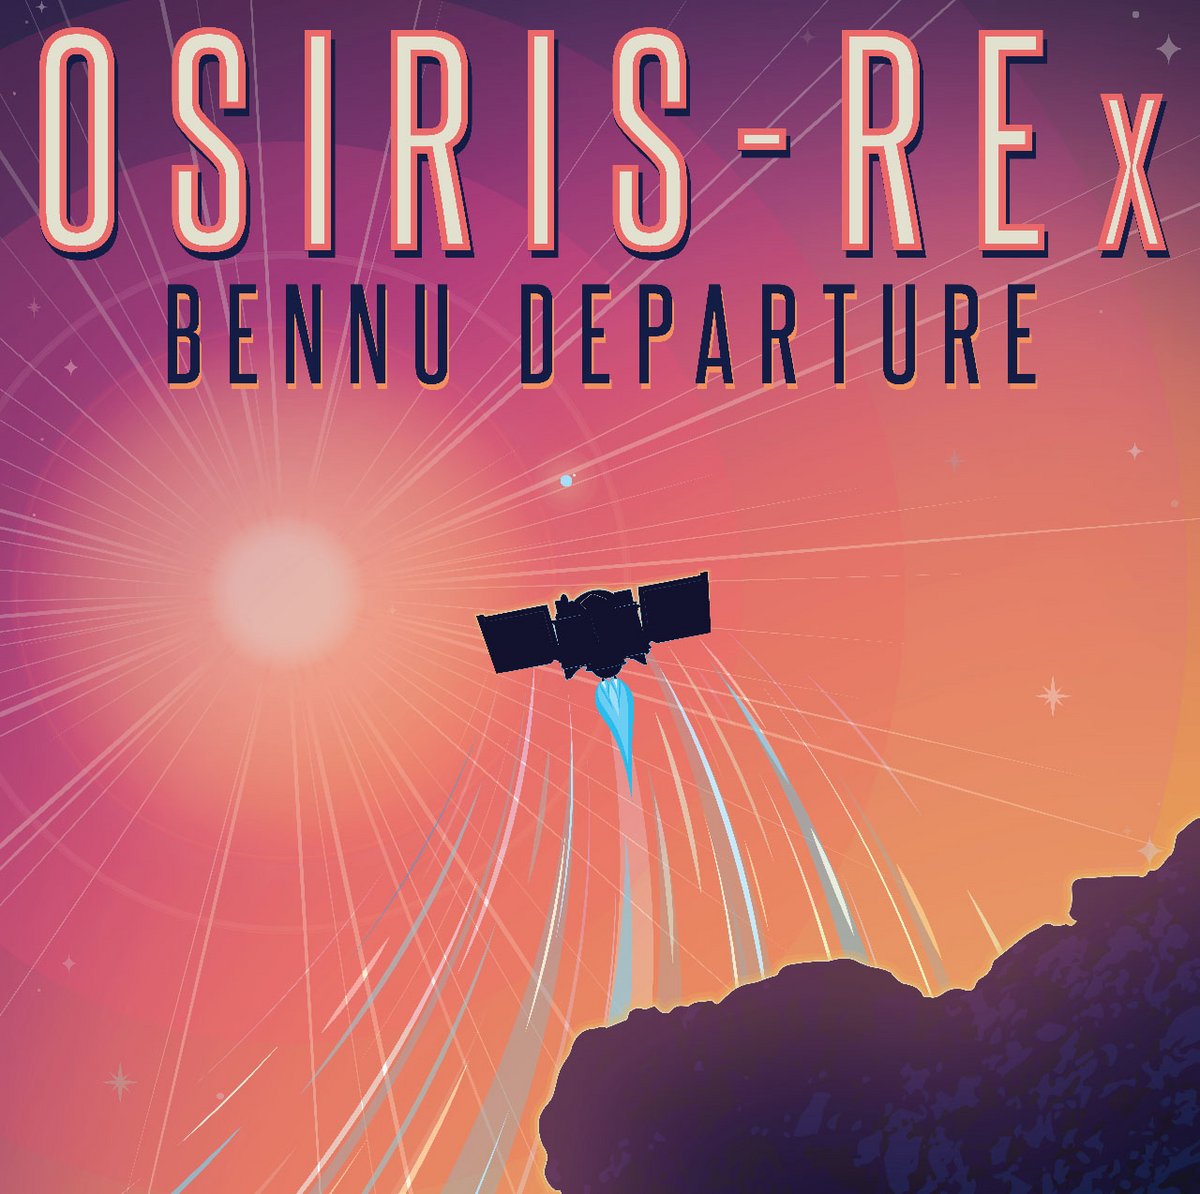 OSIRIS-REX départ Bennu © NASA